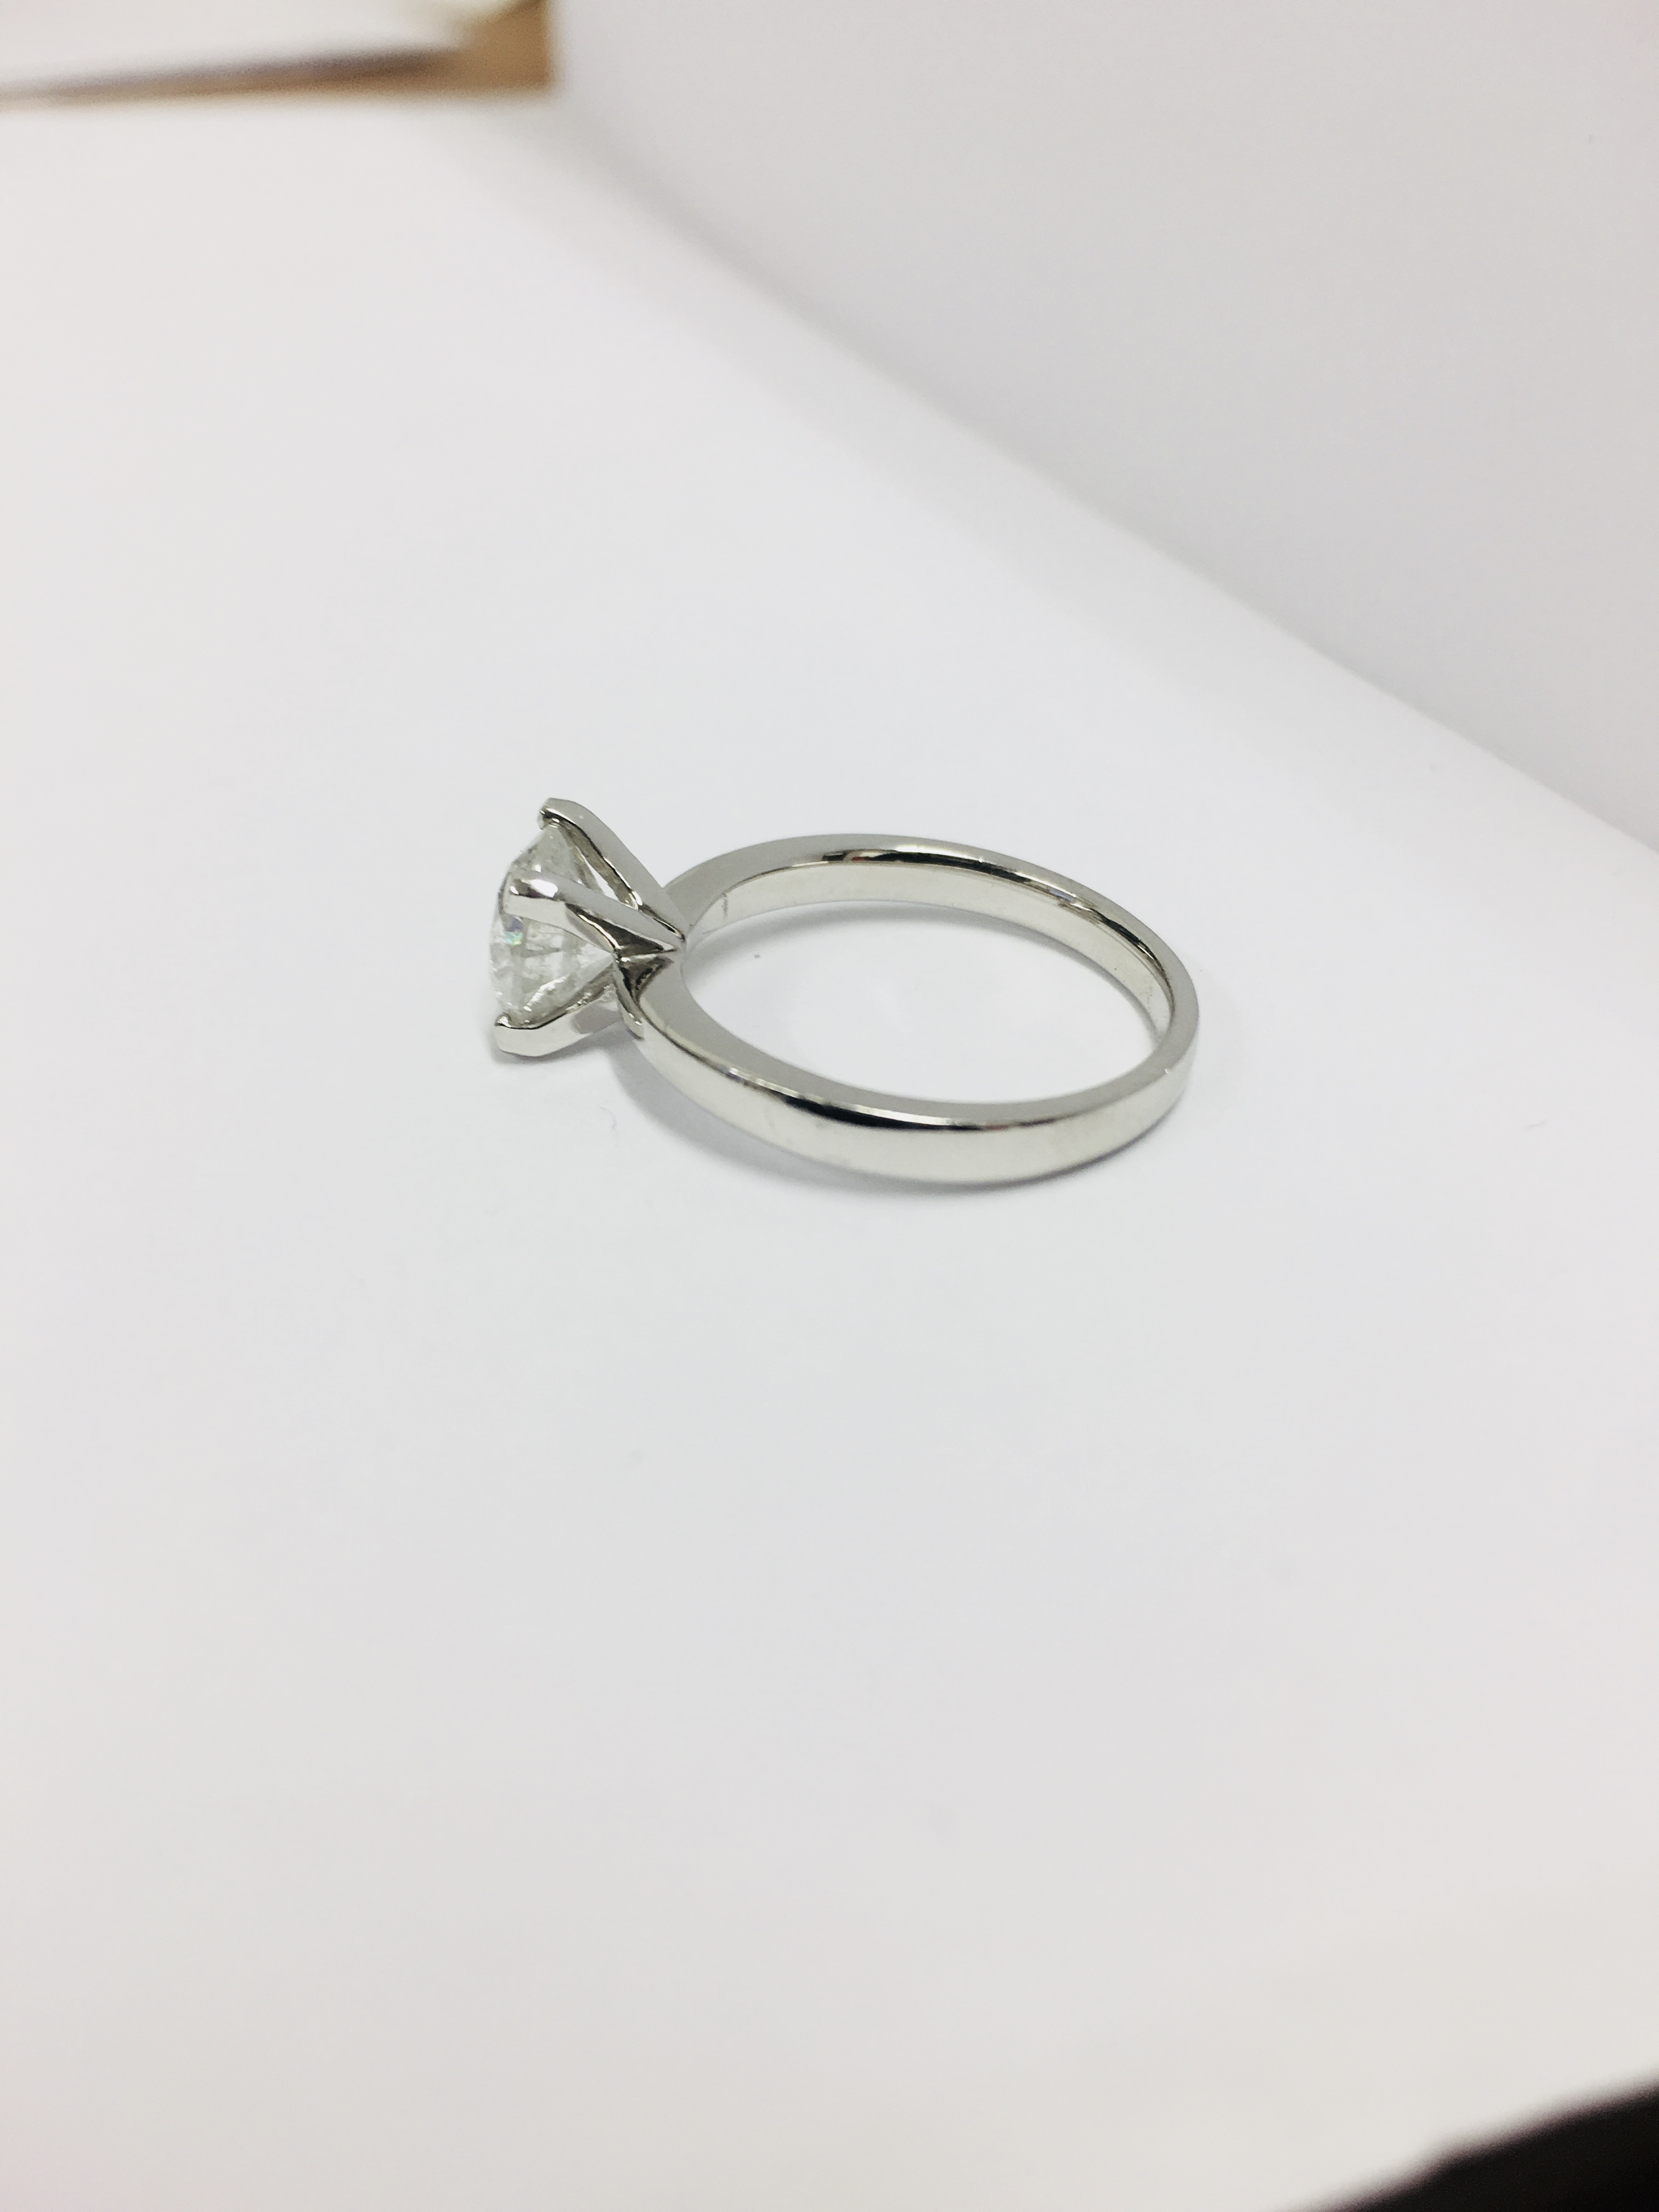 1.50ct diamond solitaire ring set in platinum - Image 13 of 35